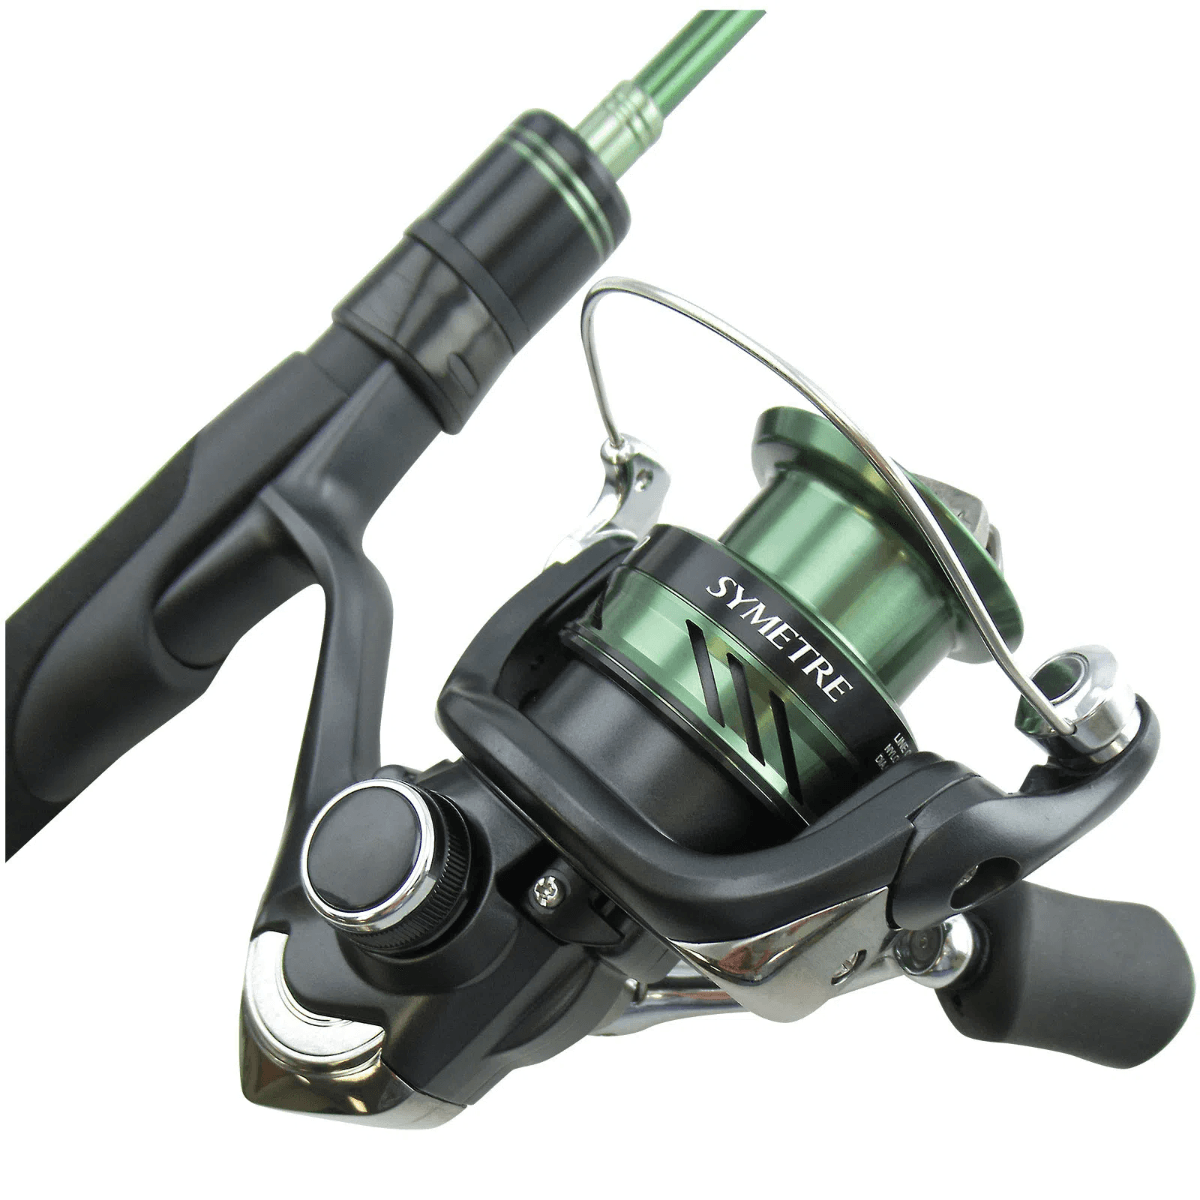 13 fishing 5'6 Ultra-Light Code White Fishing Rod & Reel Spinner Combo